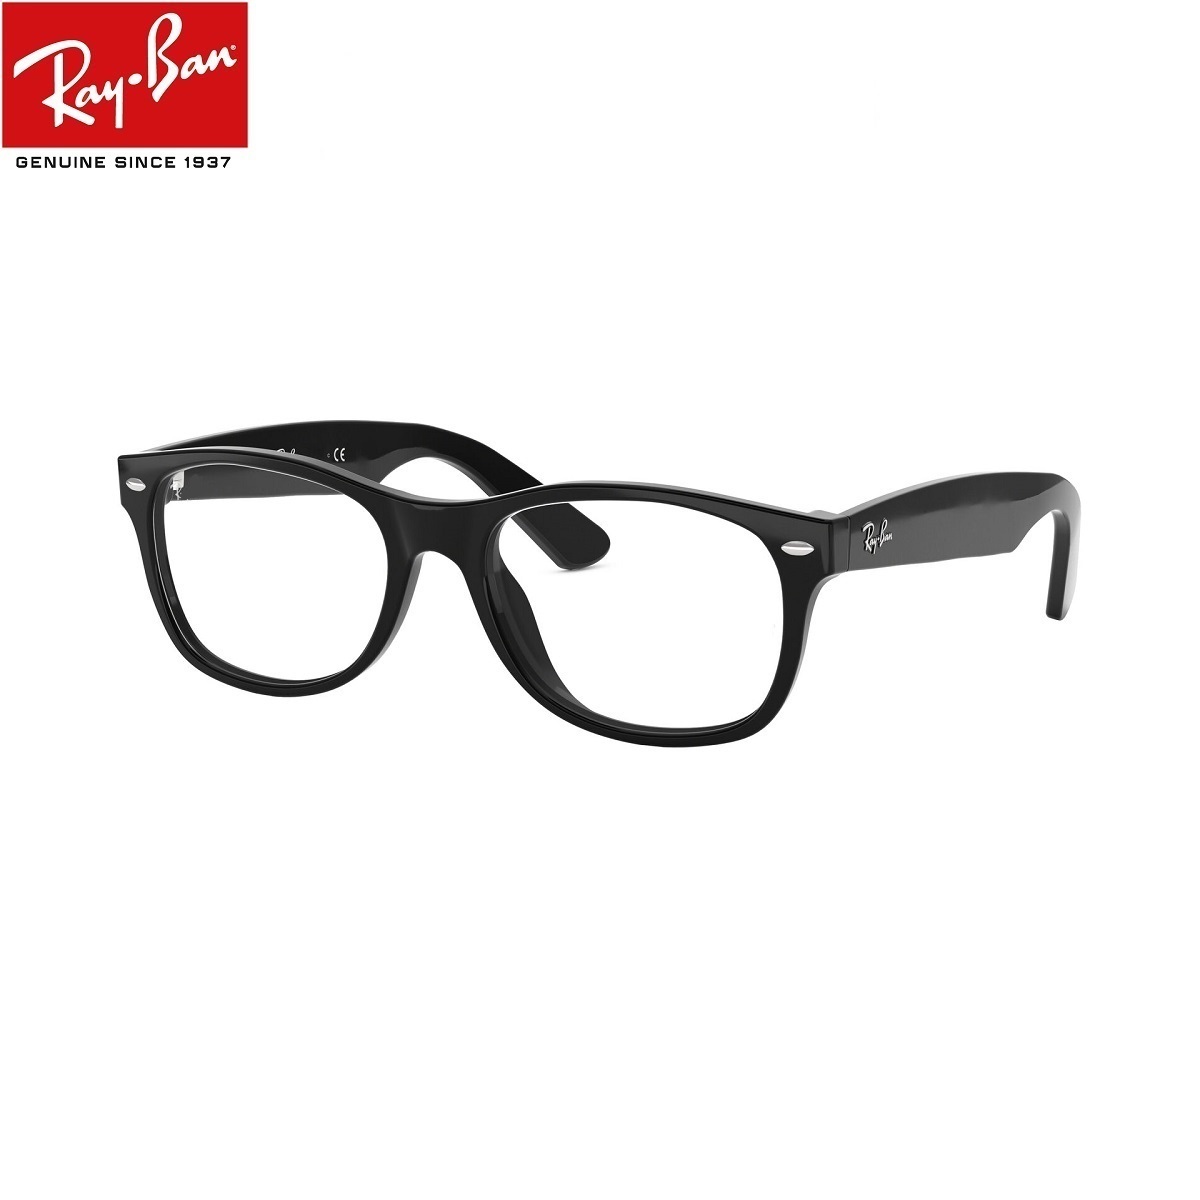 あす楽対応 正規商品販売店 レイバンブルーライトカット 老眼鏡 UVカット 超撥水 防汚コート付 +1.00 +1.25 +1.50 +1.75 +2.00 +2.25 +2.50 +2.75 +3.00 +3.50 +4.00 ブルーライトカット老眼鏡 メガネ 中間度数 かっこいいシニアグラス Ray-Ban（レイバン）RX5184F 2000 52サイズ ウェイファーラー セルフレーム メンズ レディース 男女兼用 UVカット・ブルーライトカットレンズPC・スマホ 【正規メーカー保証書付】【あす楽